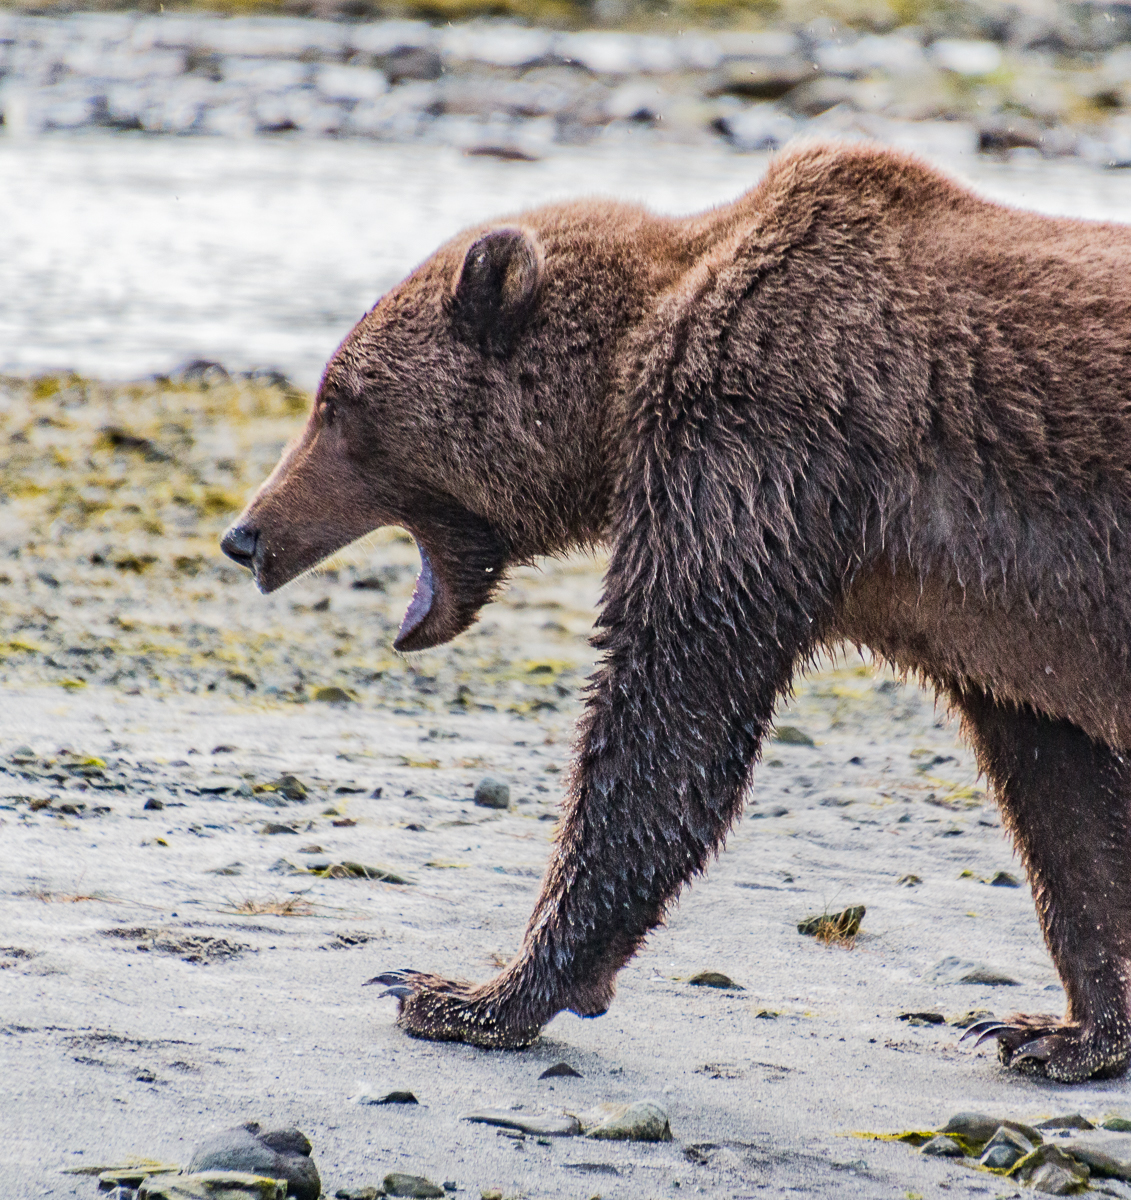 Juvenile Kodiak bear